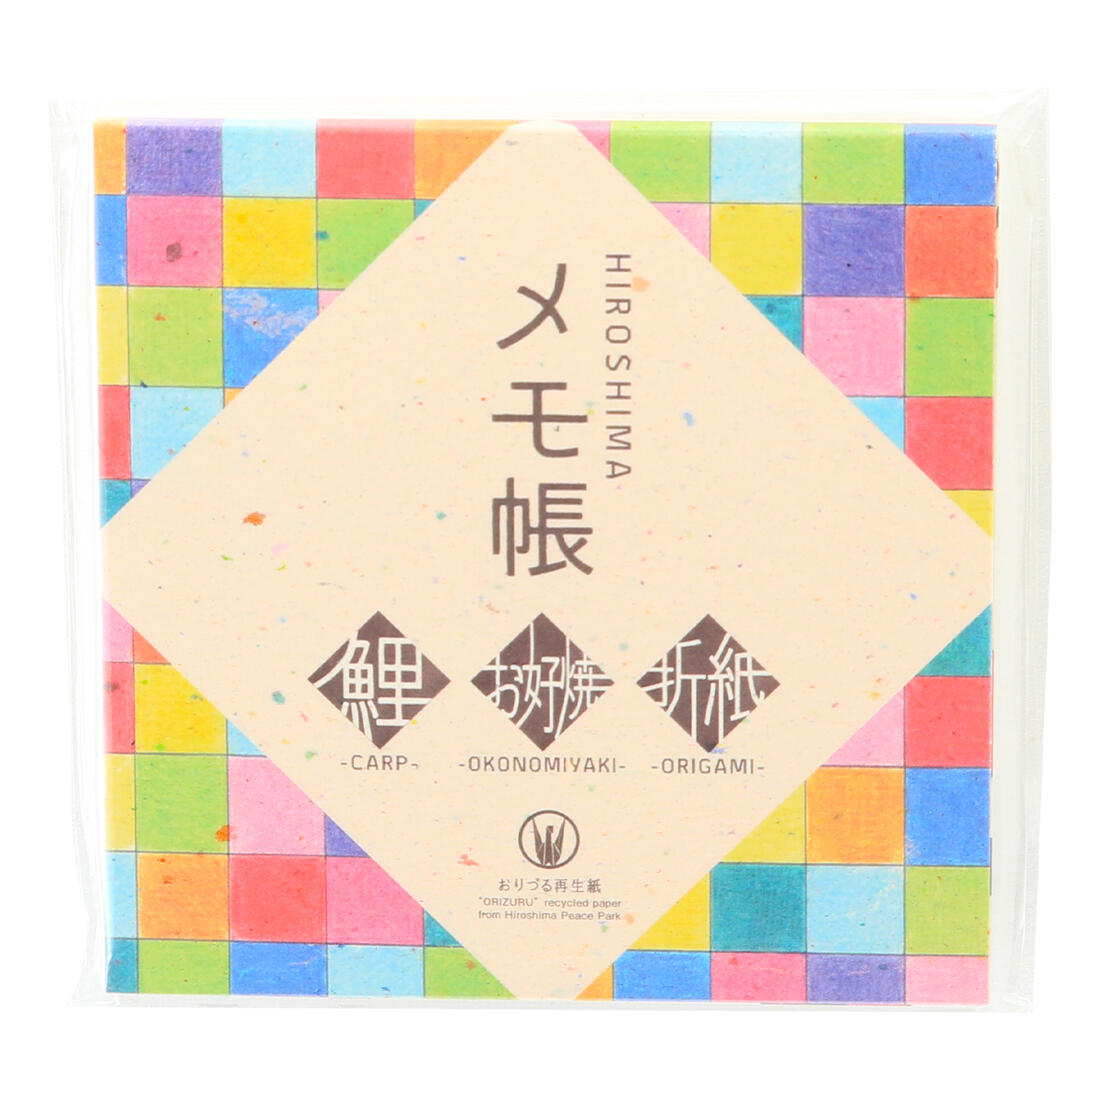 【商品特徴】世界中から、願いを込めて平和記念公園に届けられる折り鶴を使用して作られた再生紙で、「平和おりひめ」と名付けられています。 広島を象徴するモチーフを総柄で描き、メモ帳の中身は全部で4種類です。 鯉、折紙、お好焼、おりづる再生紙となっております。 どれも、おりづる再生紙を使用しているため、沢山のおりづるのピースが独特な模様を作り、1つとして全く同じ物が無い、特別感のあるメモ帳です。 たくさんの広島の魅力を、手にした方から世界中へ繋いでいただけますよう、新たな願いをこめて。 「ORIZURU」recycled paper from Hiroshima Peace Park. 商品説明県名 原材料 おりづる再生紙 サイズ 105×6×103(mm) 原産国 日本 内容量 1冊(4種×15枚 鯉、お好焼き、折紙、無地) メーカー名 株式会社松田製袋広島県広島市中区舟入幸町21番2号